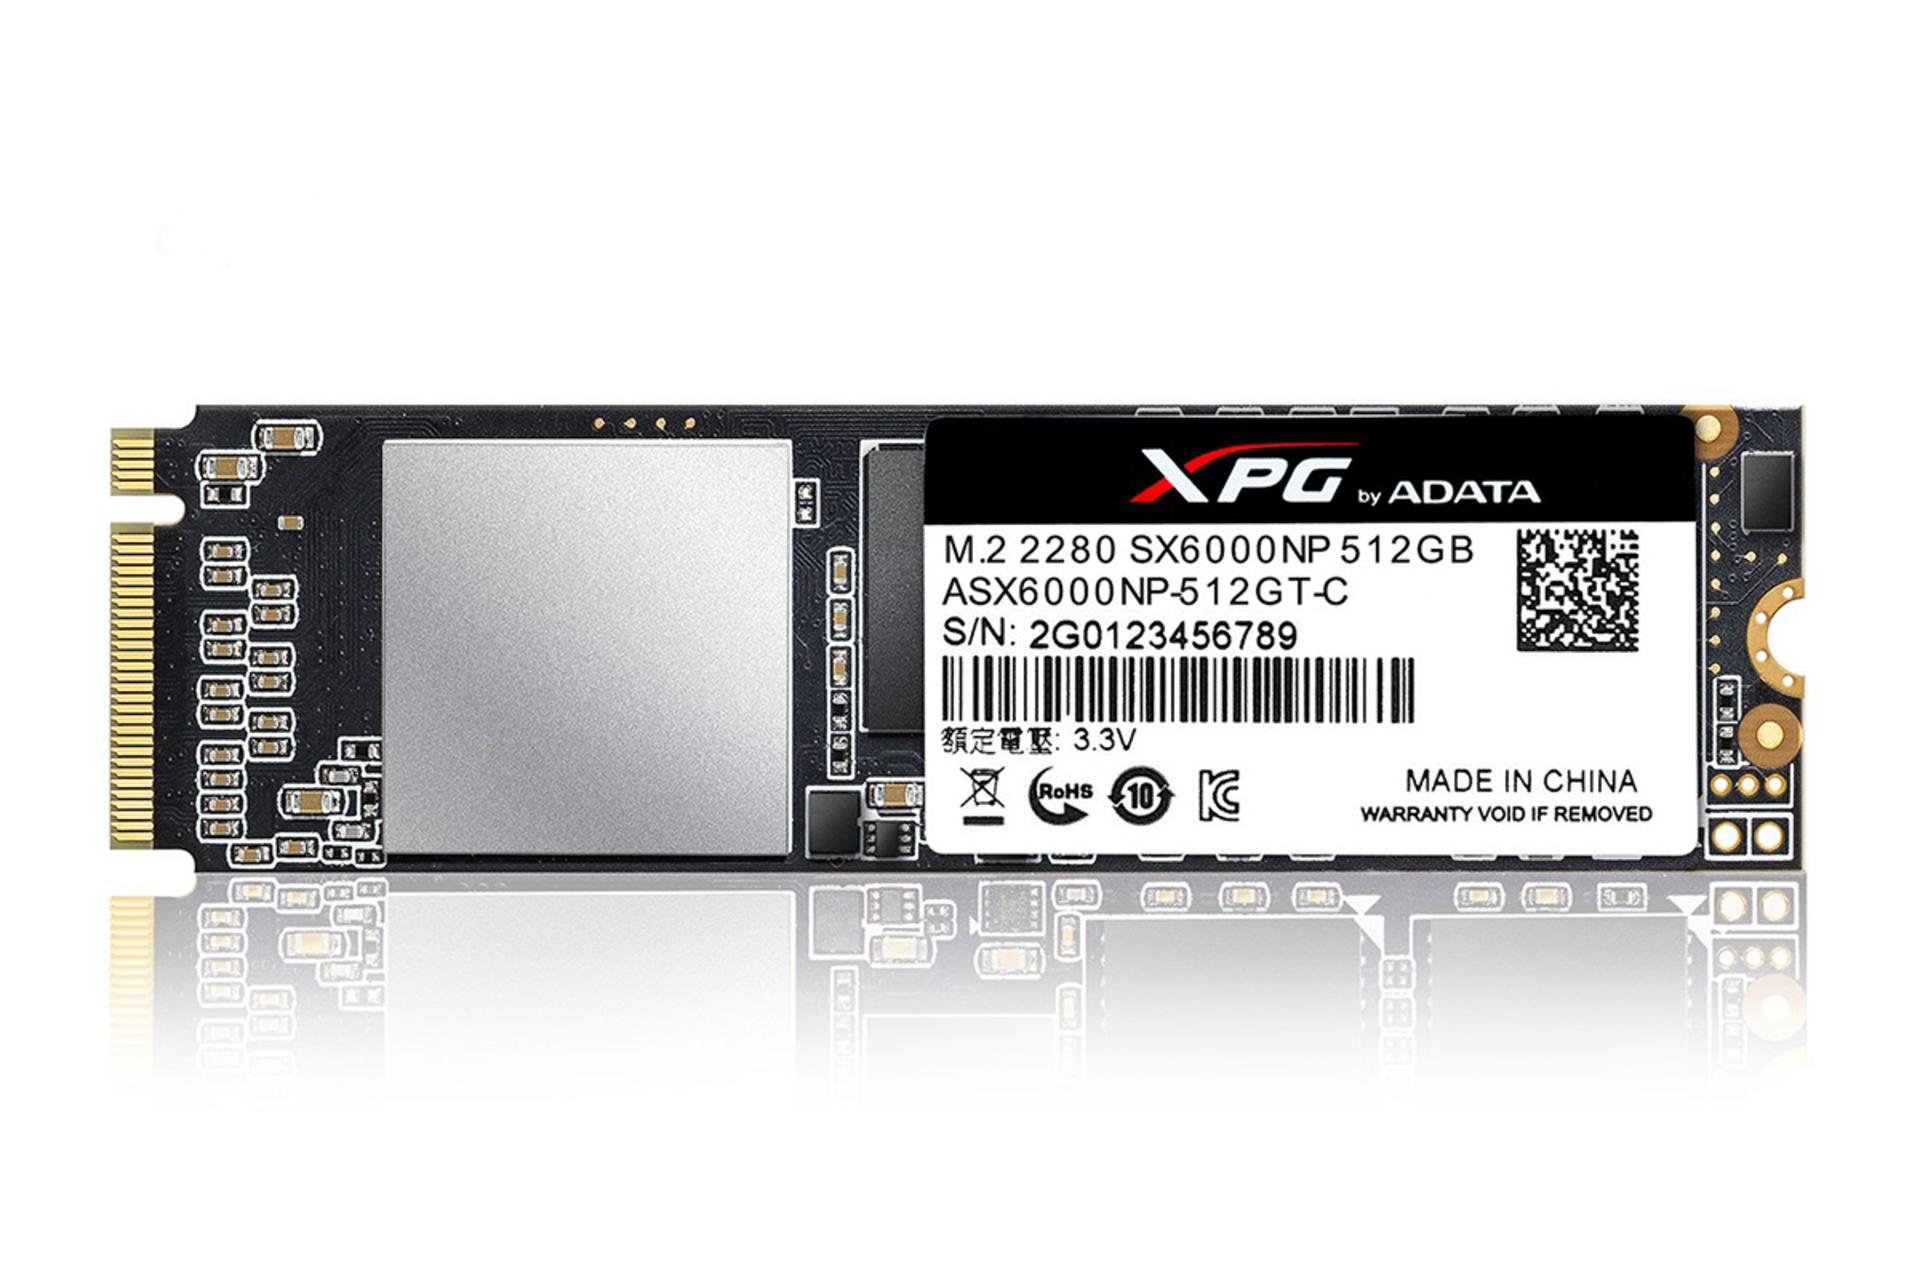 مرجع متخصصين ايران XPG SX6000 Pro PCIe Gen3x4 M.2 2280 512GB